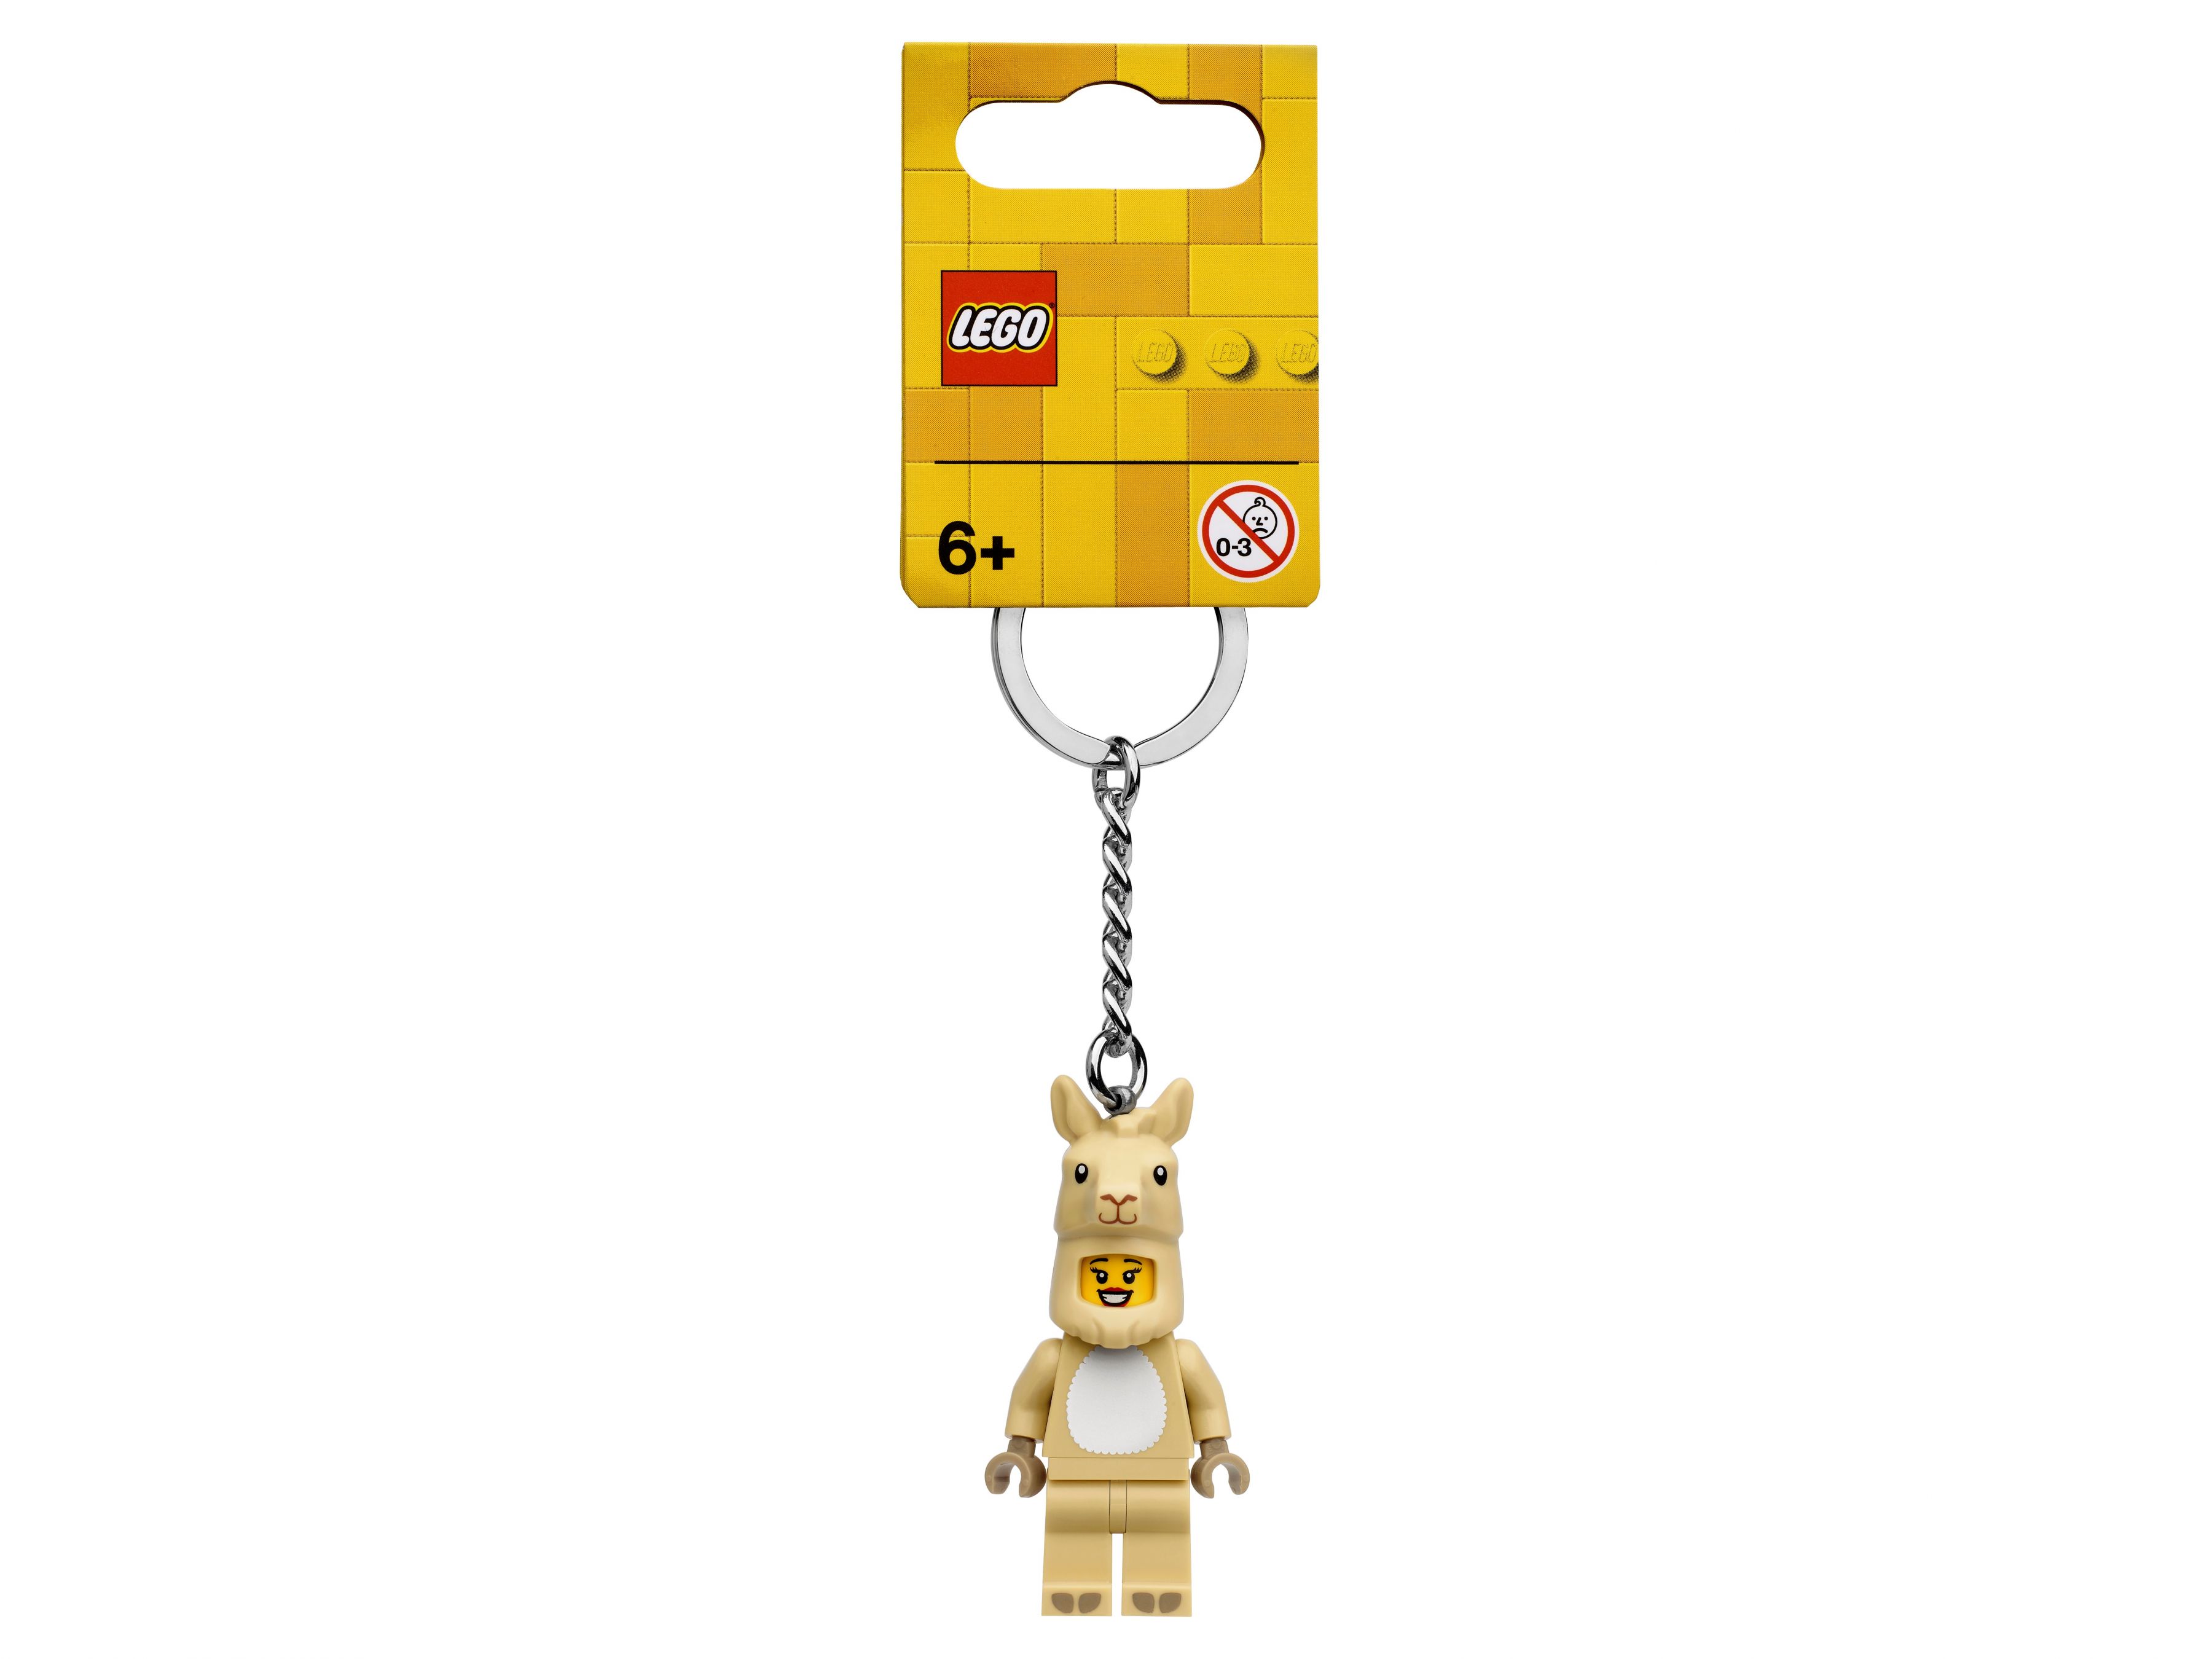 LEGO Gear 854081 Schlüsselanhänger mit Mädchen im Lamakostüm LEGO_854081_alt1.jpg